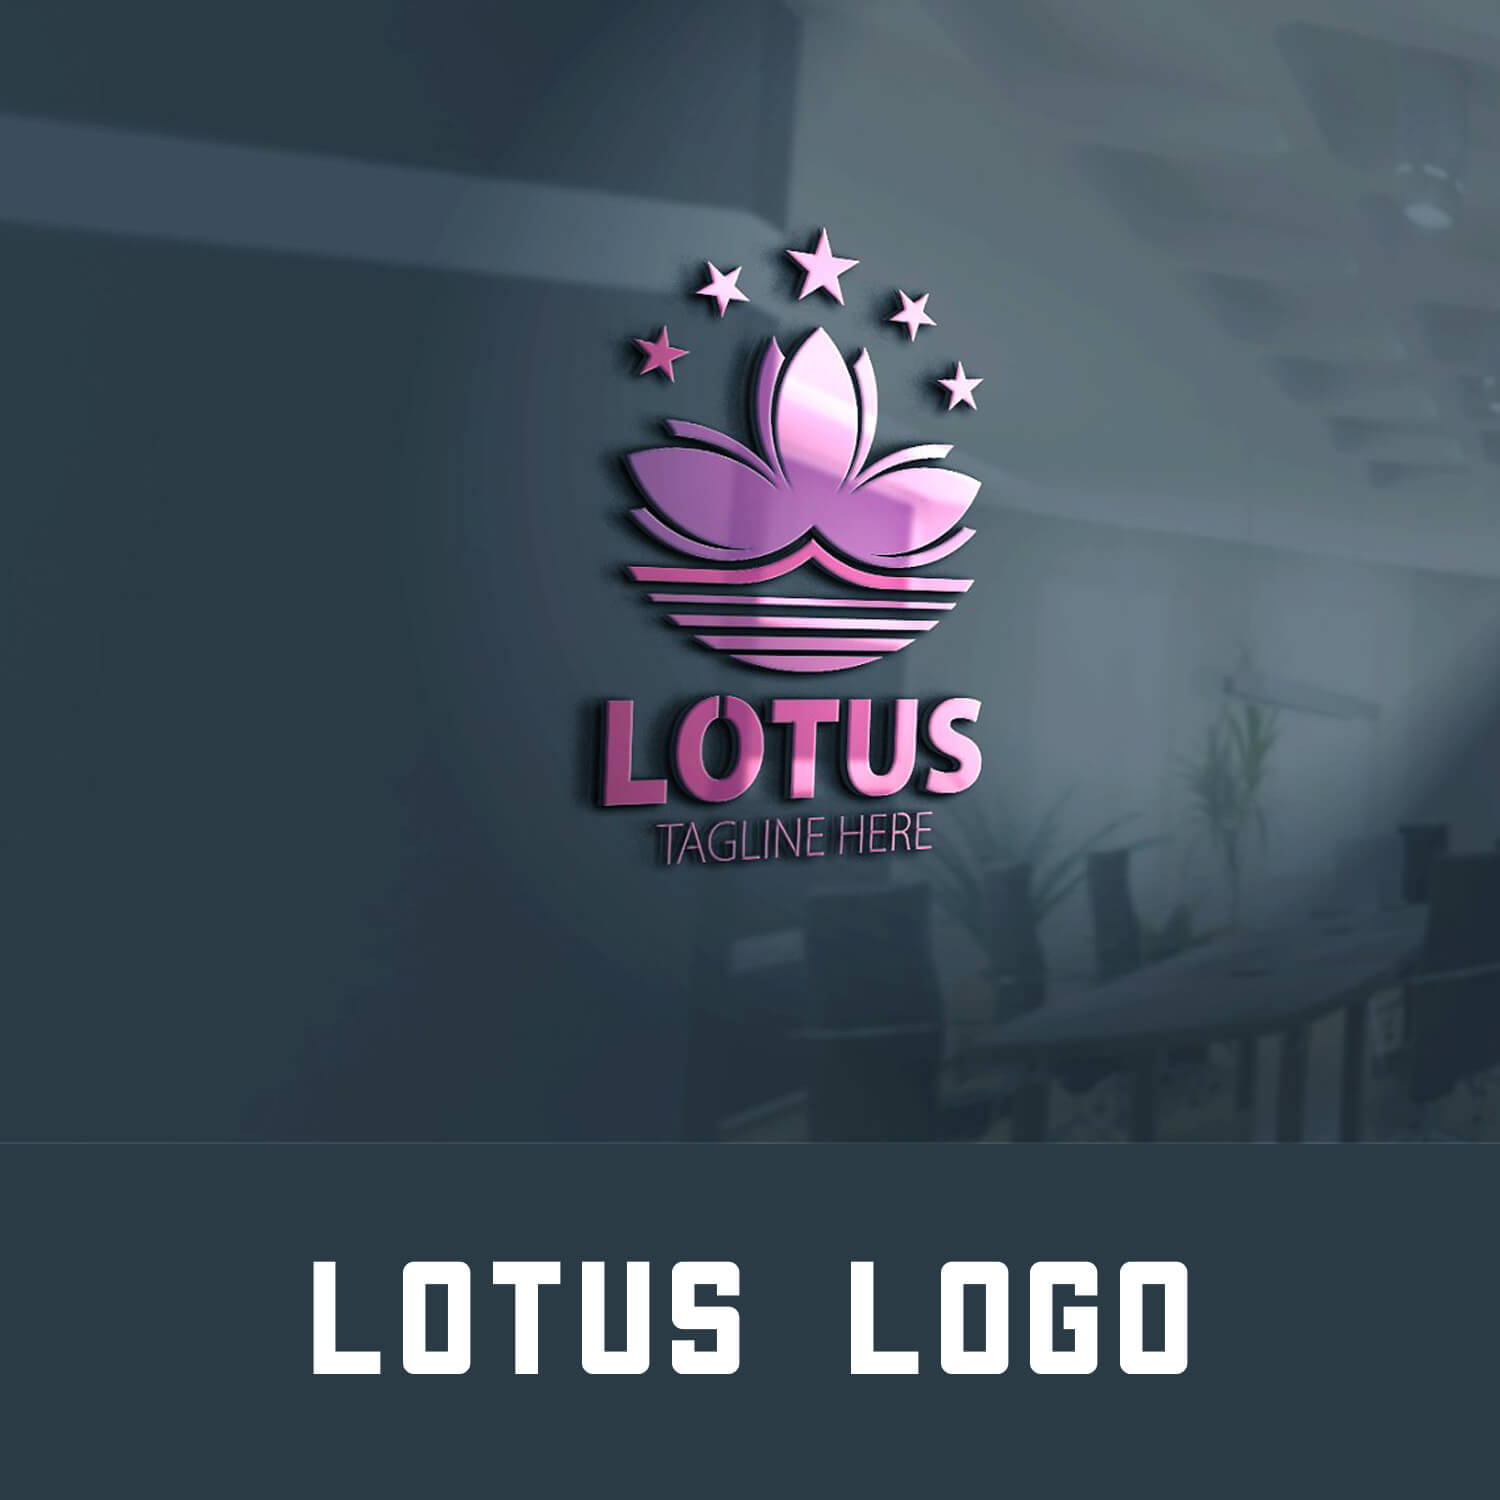 Lotus logo.